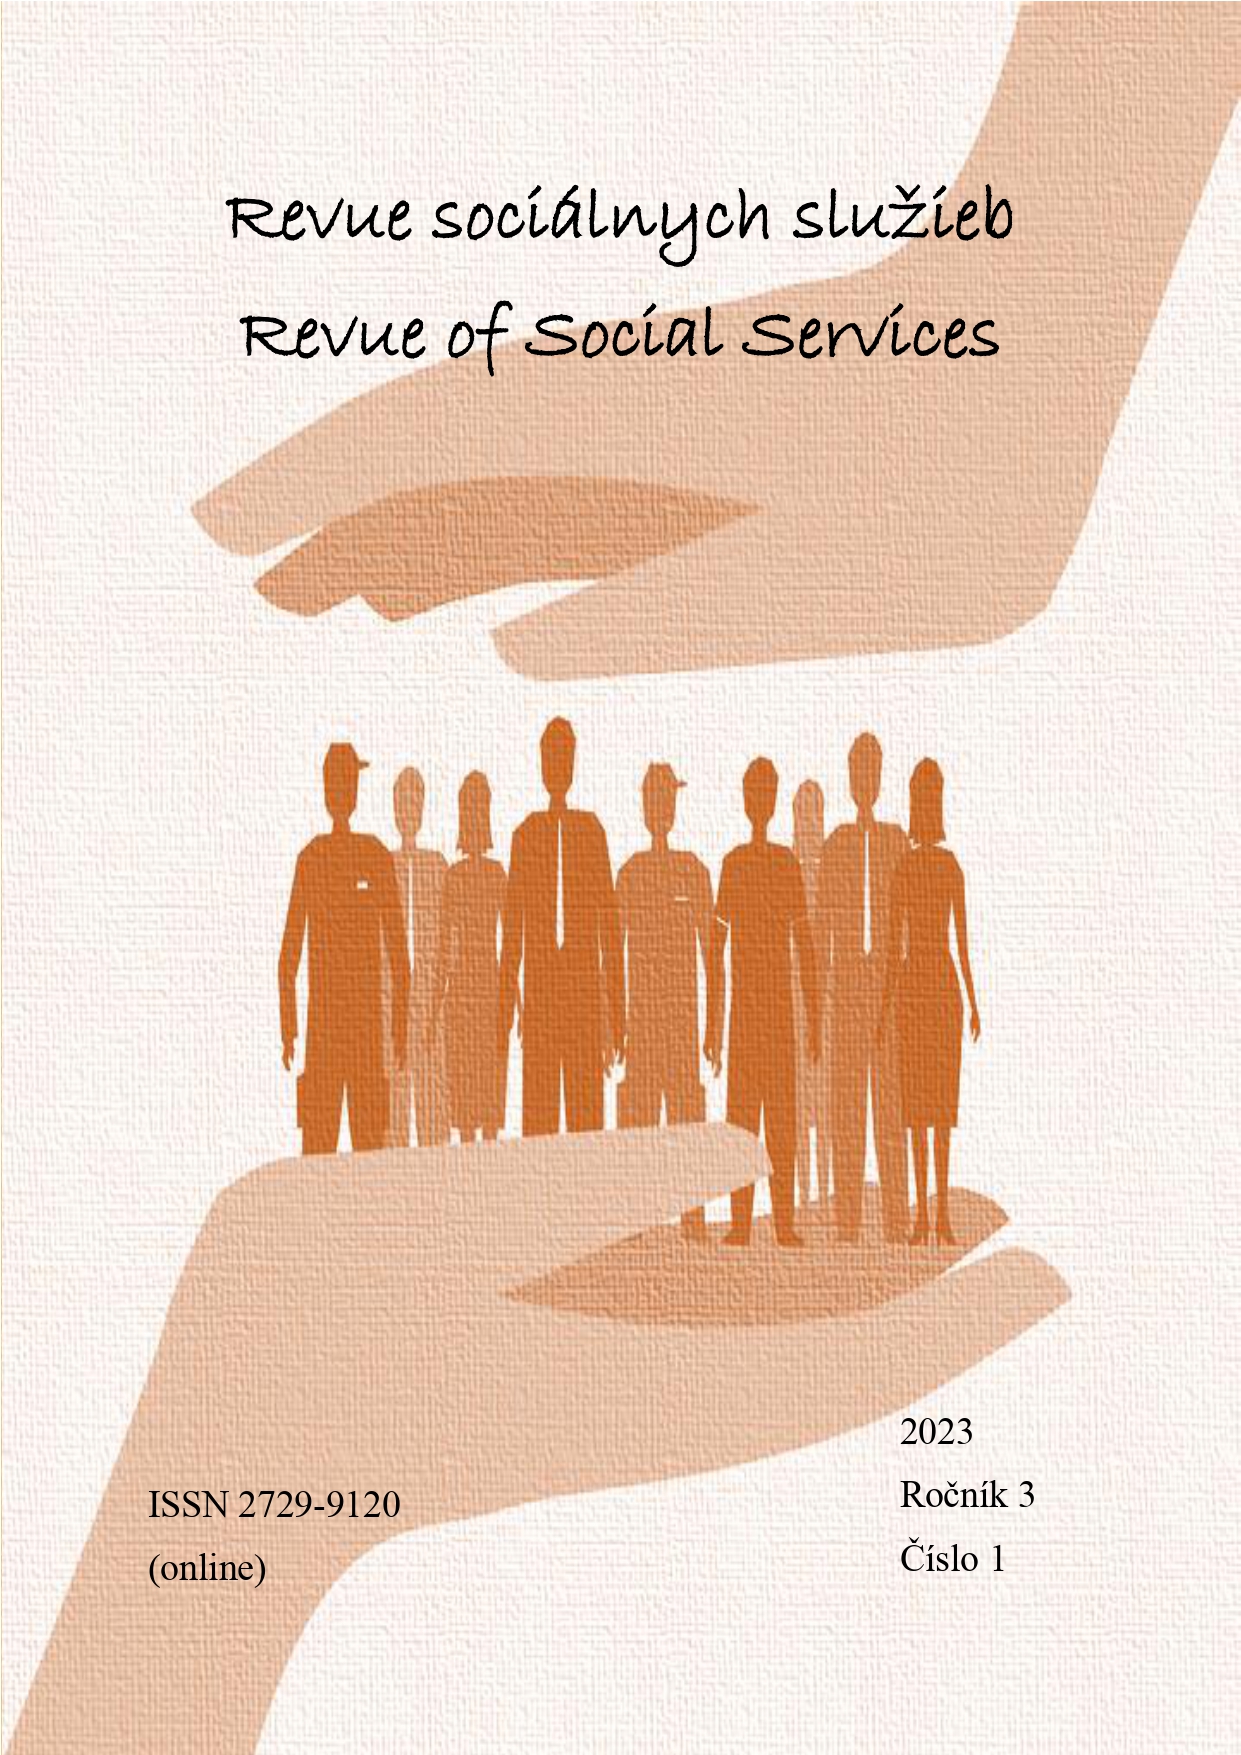 					View Vol. 3 No. 1 (2023): Revue of Social Services/Revue sociálnych služieb
				